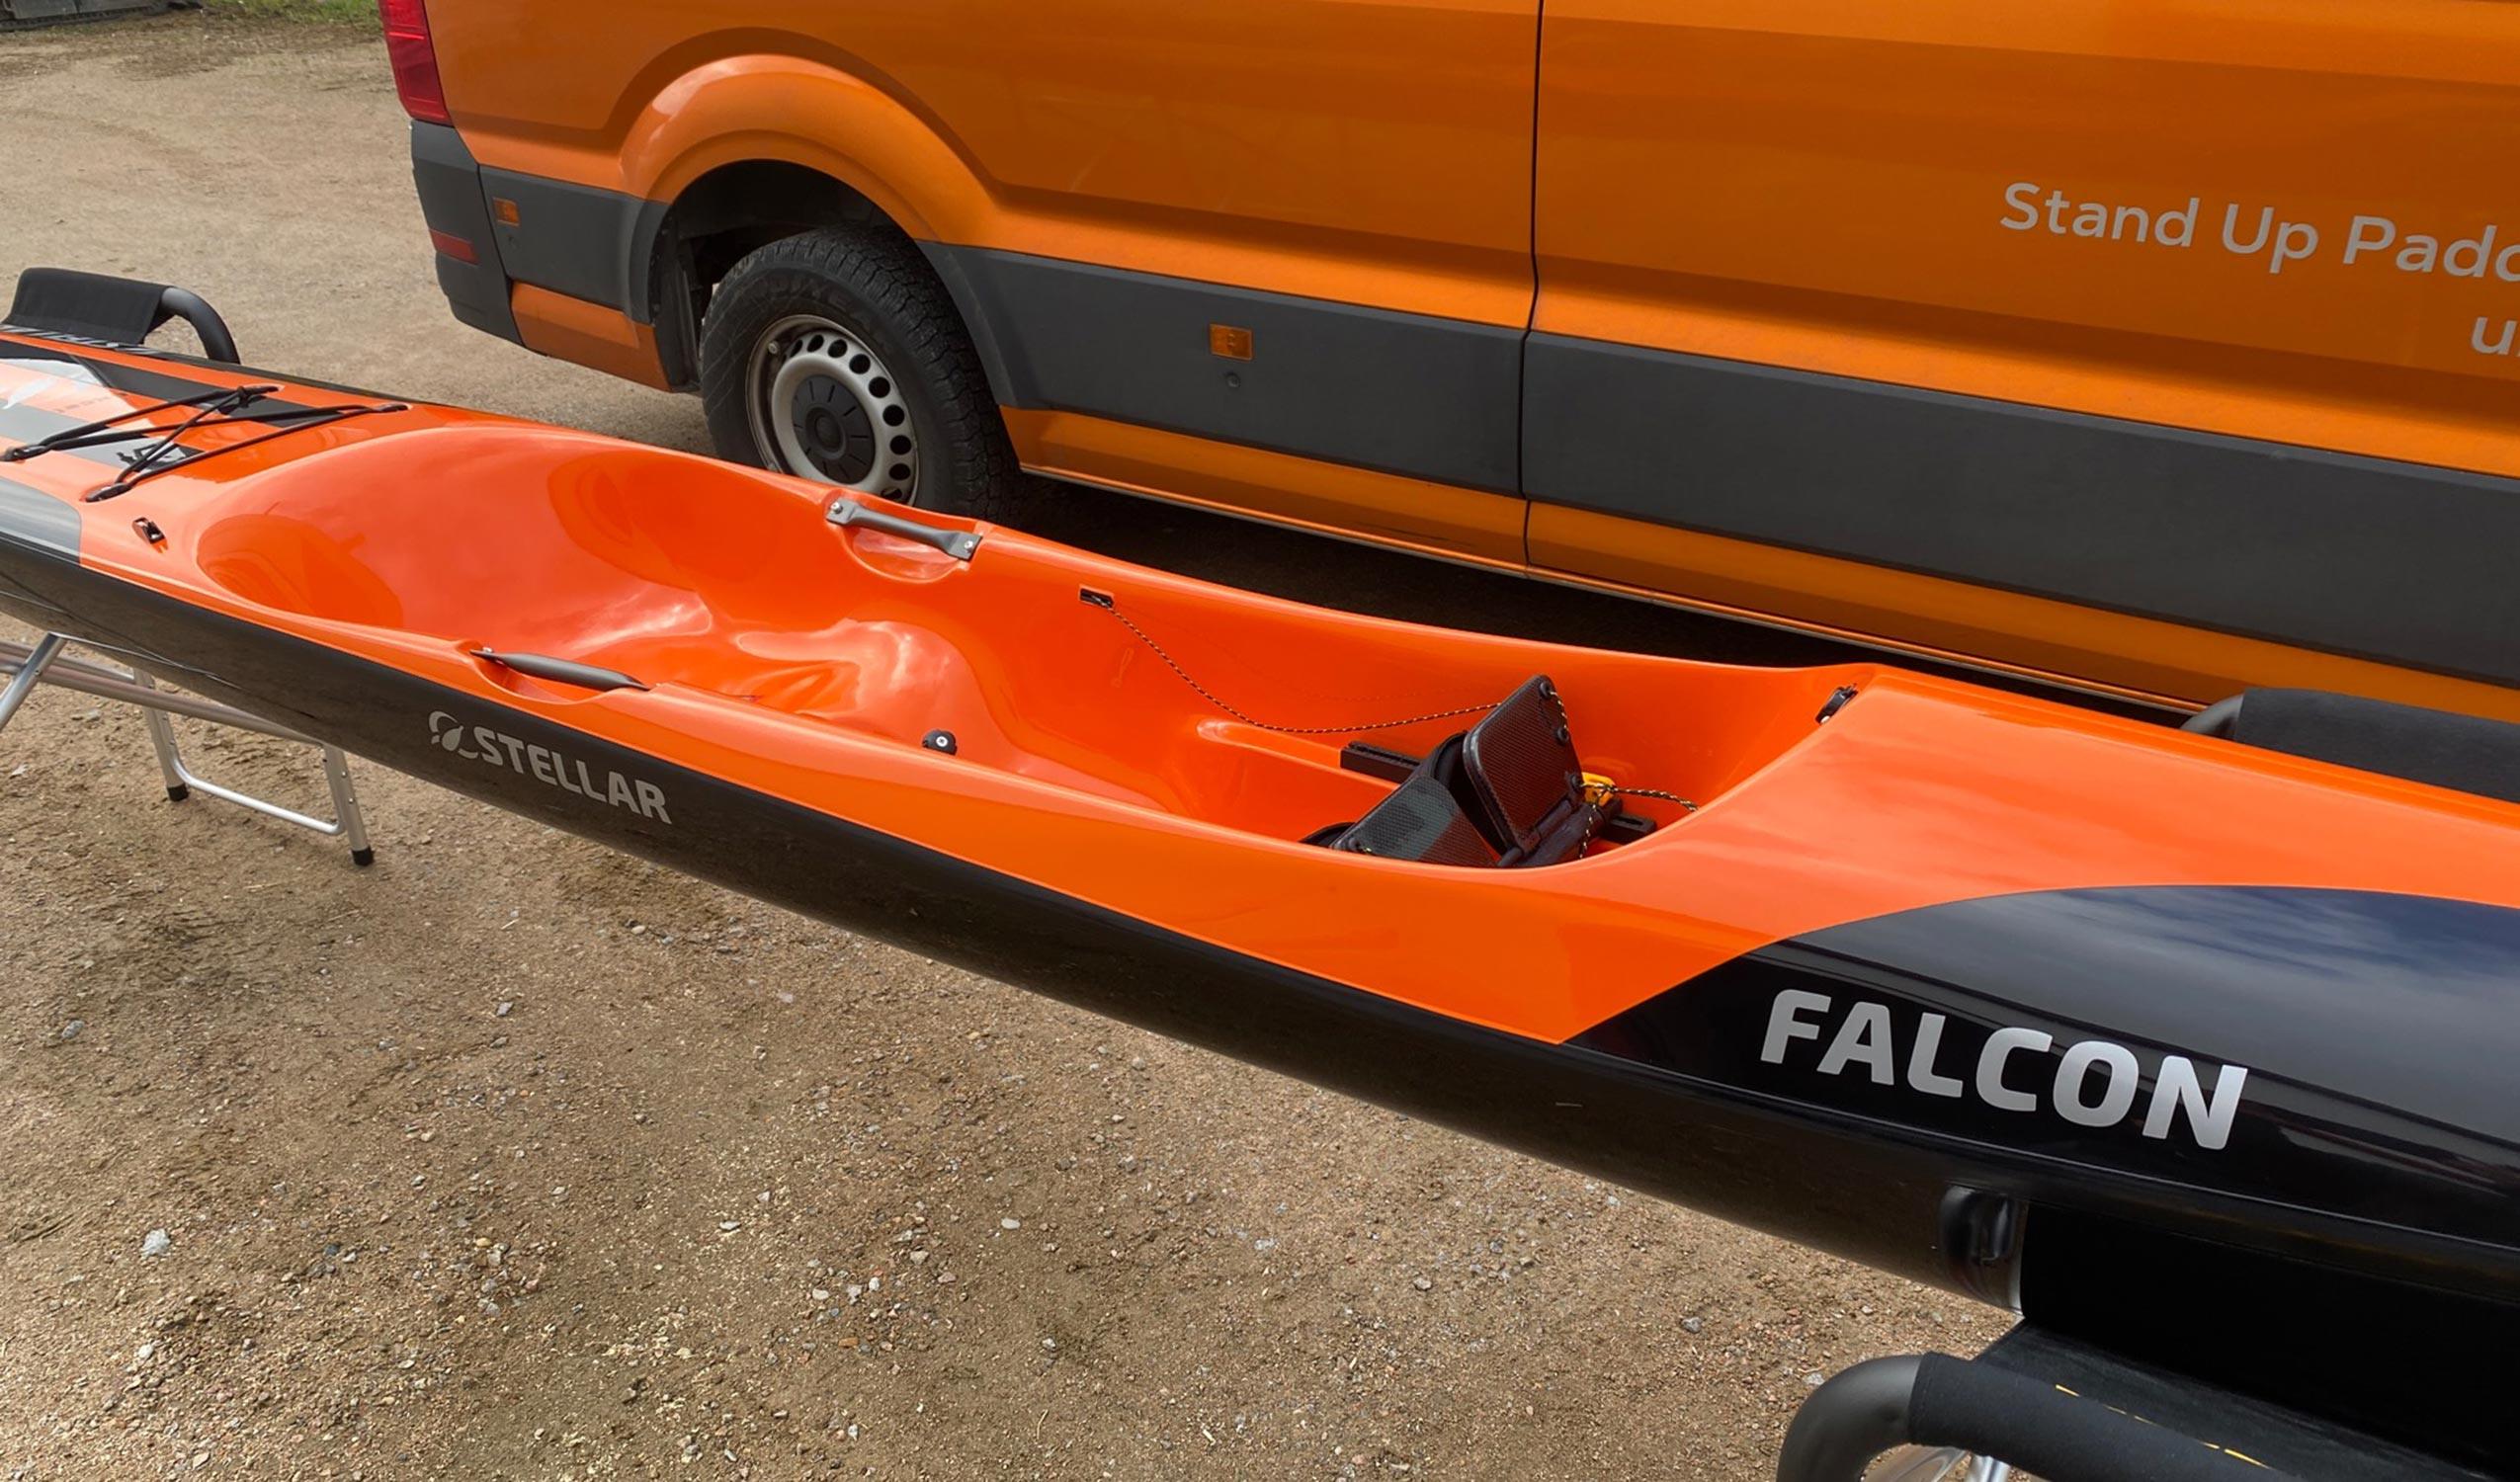 Produktbild von " Falcon Excel-schwarz orange " der Marke STELLAR Lightweight für 3490.00 €. Erhältlich online bei Lite Venture ( www.liteventure.de )